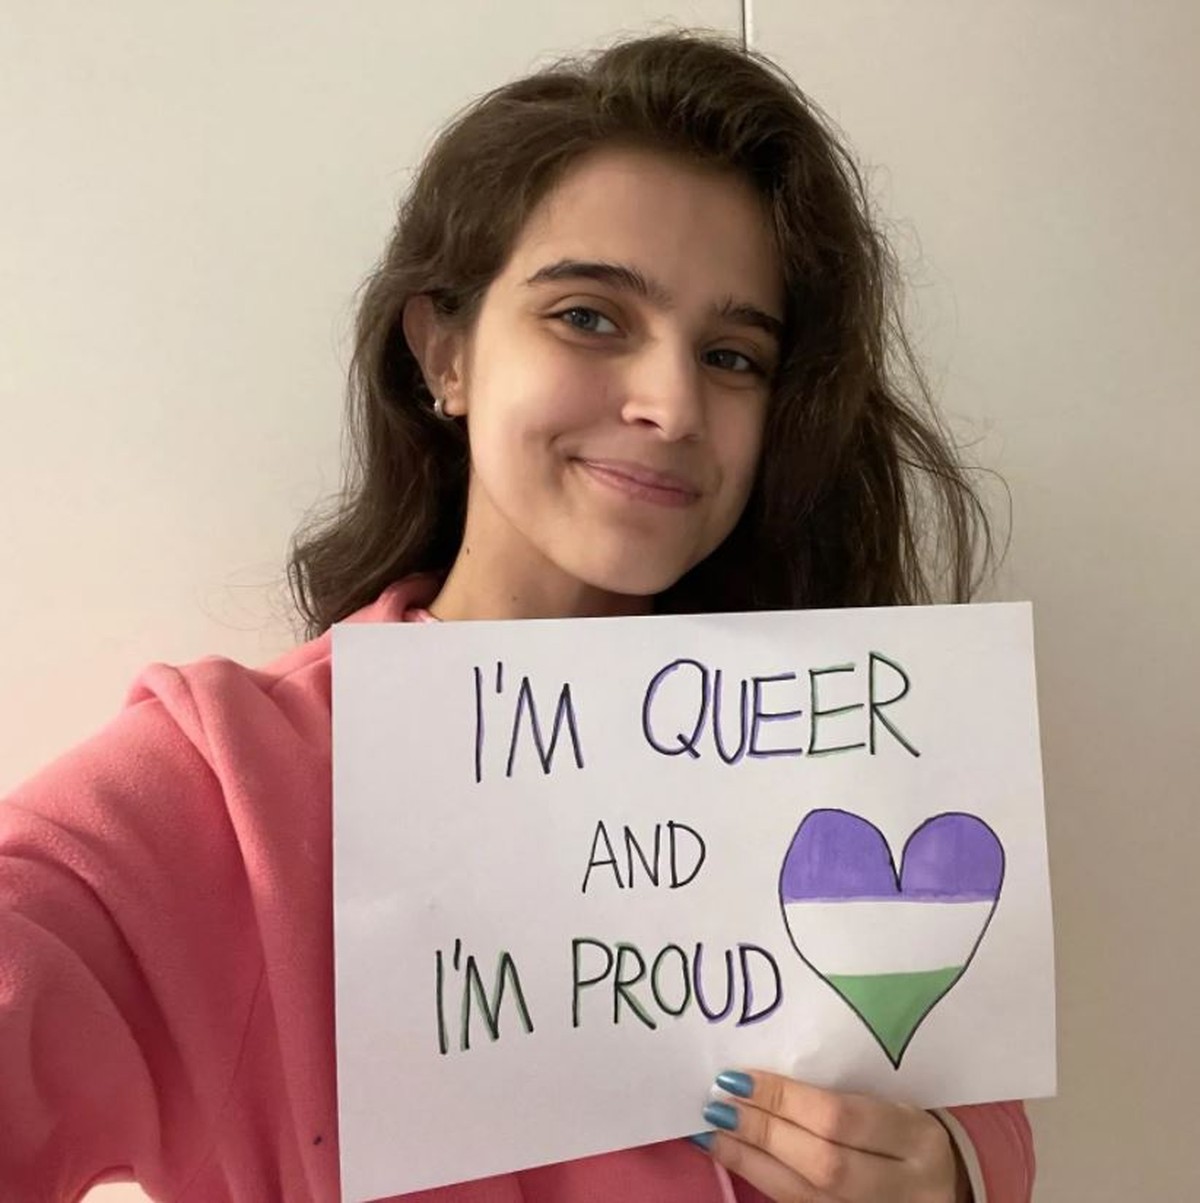 Filha do apresentador Tadeu Schmidt celebra Dia do Orgulho LGBTQIA+ na internet: ‘sou queer e me orgulho’ |  Diversidade